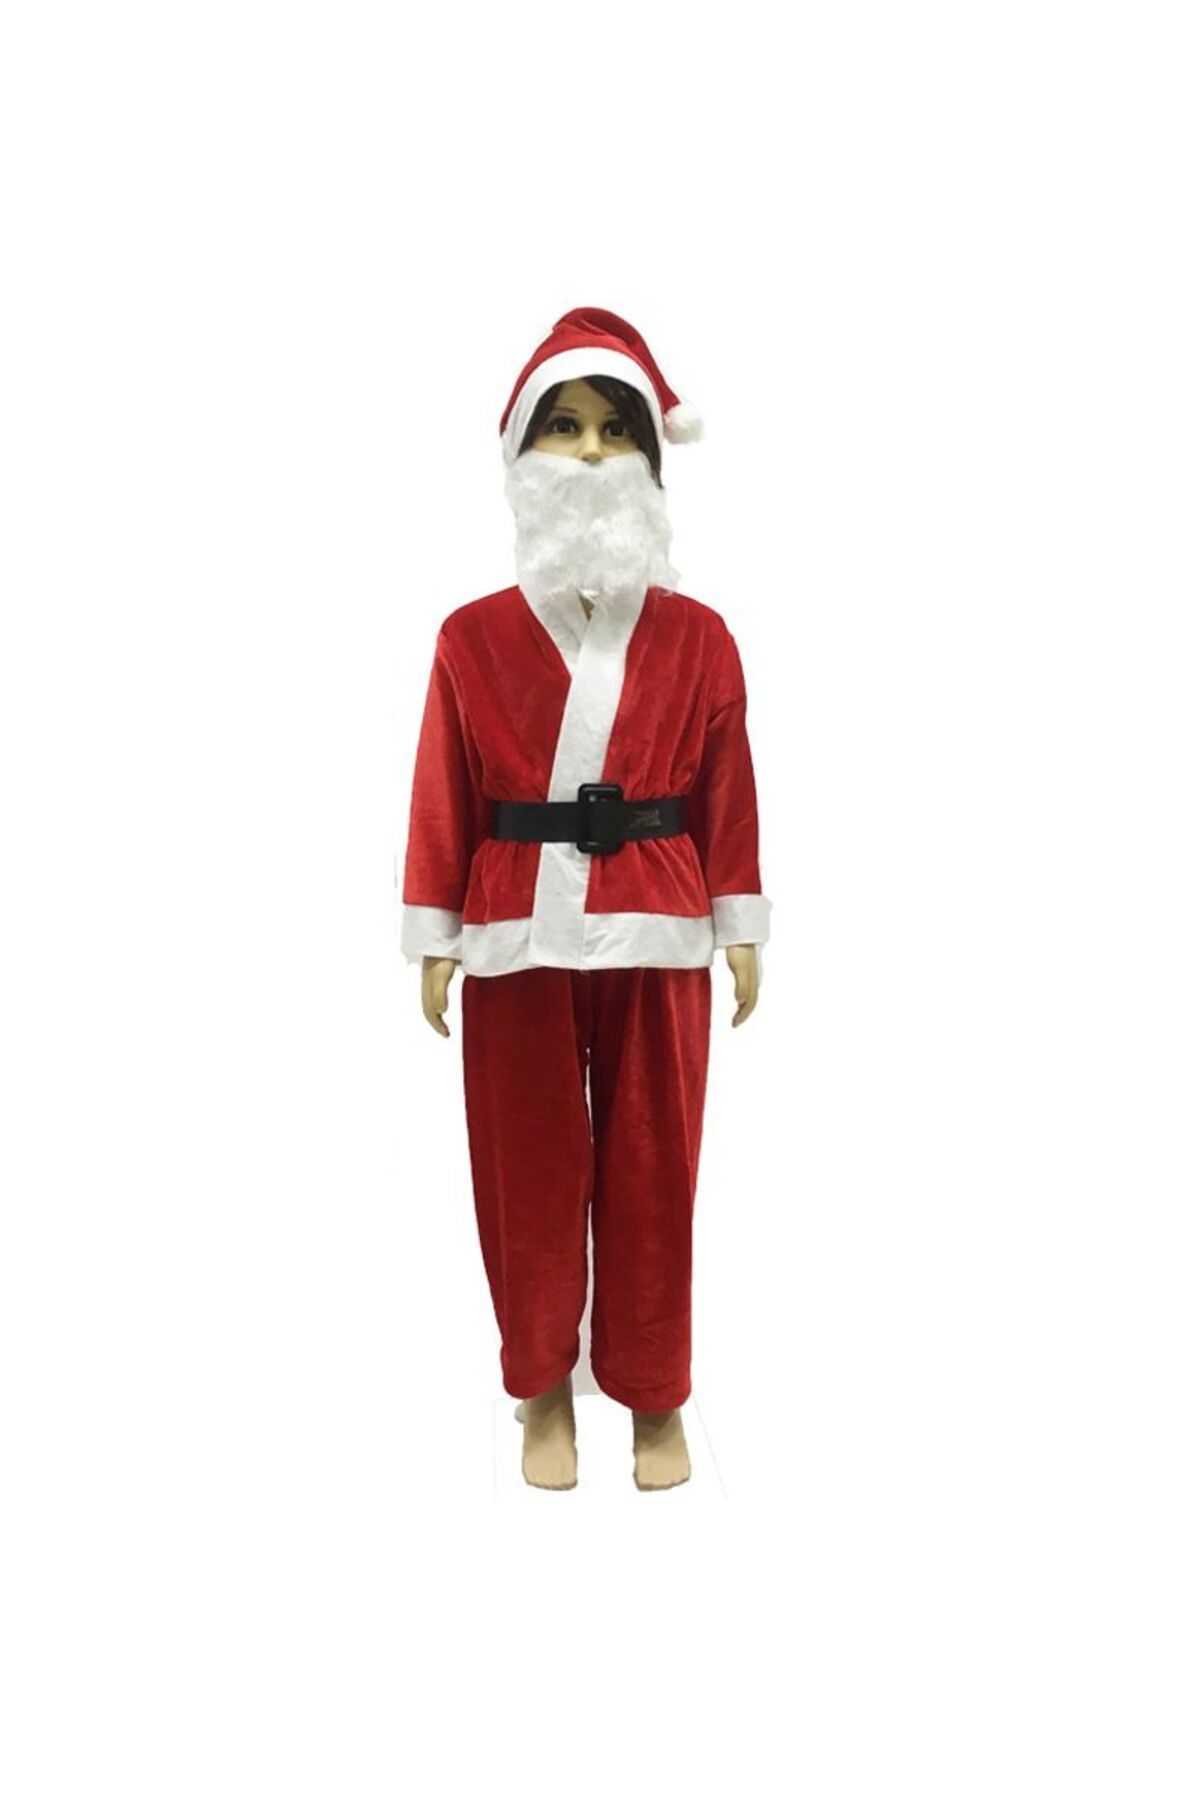 partidolu Polar Erkek Çocuk Noel Baba Kıyafeti Kostümü 12-14 Yaş Yılbaşı